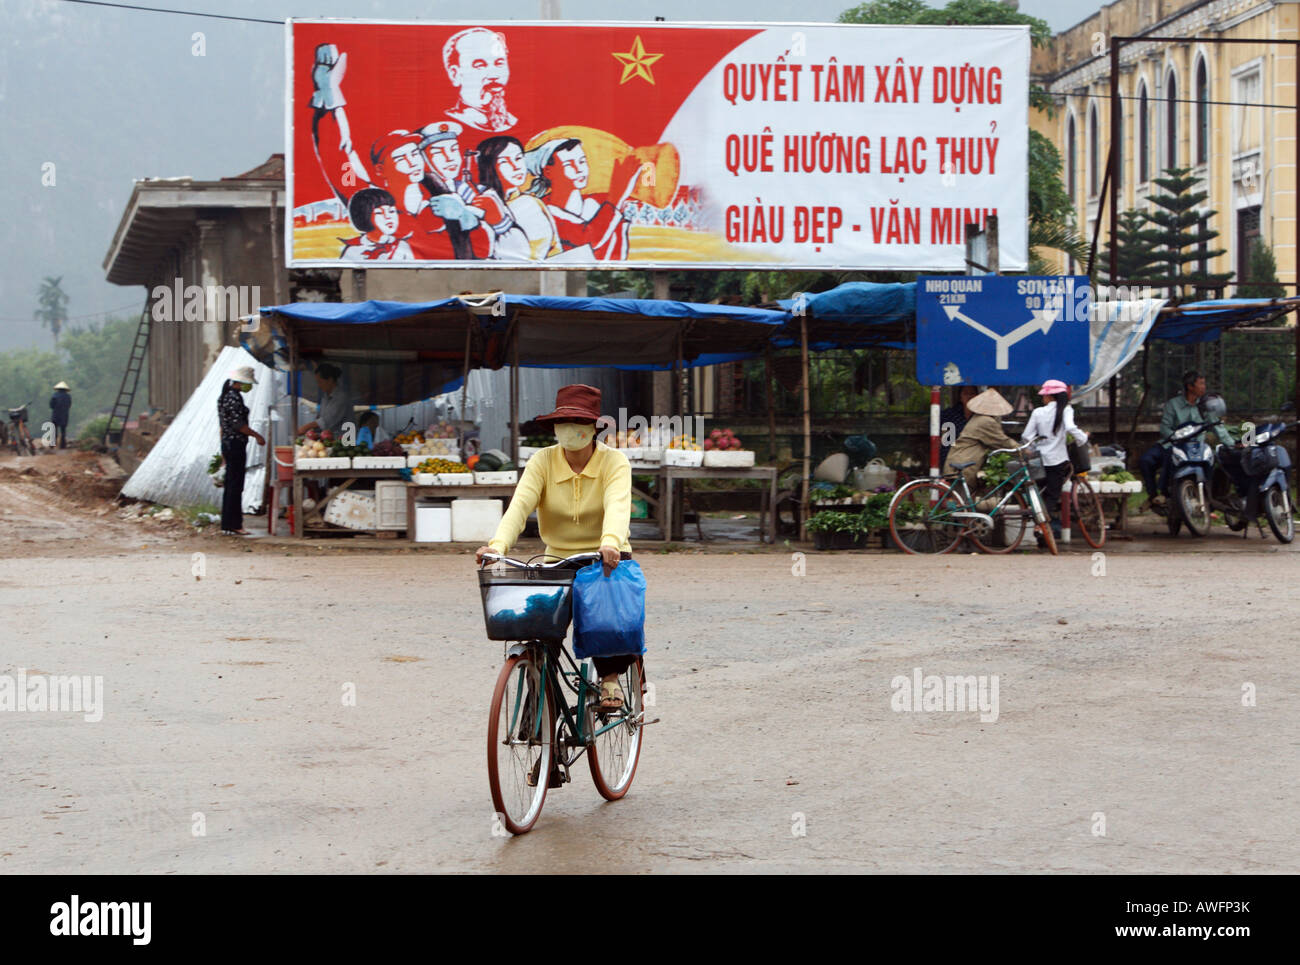 Politische Werbung Plakat über einen Markt Stand, Lac Thuy Hoa Bin Provinz, Vietnam, Asien Stockfoto